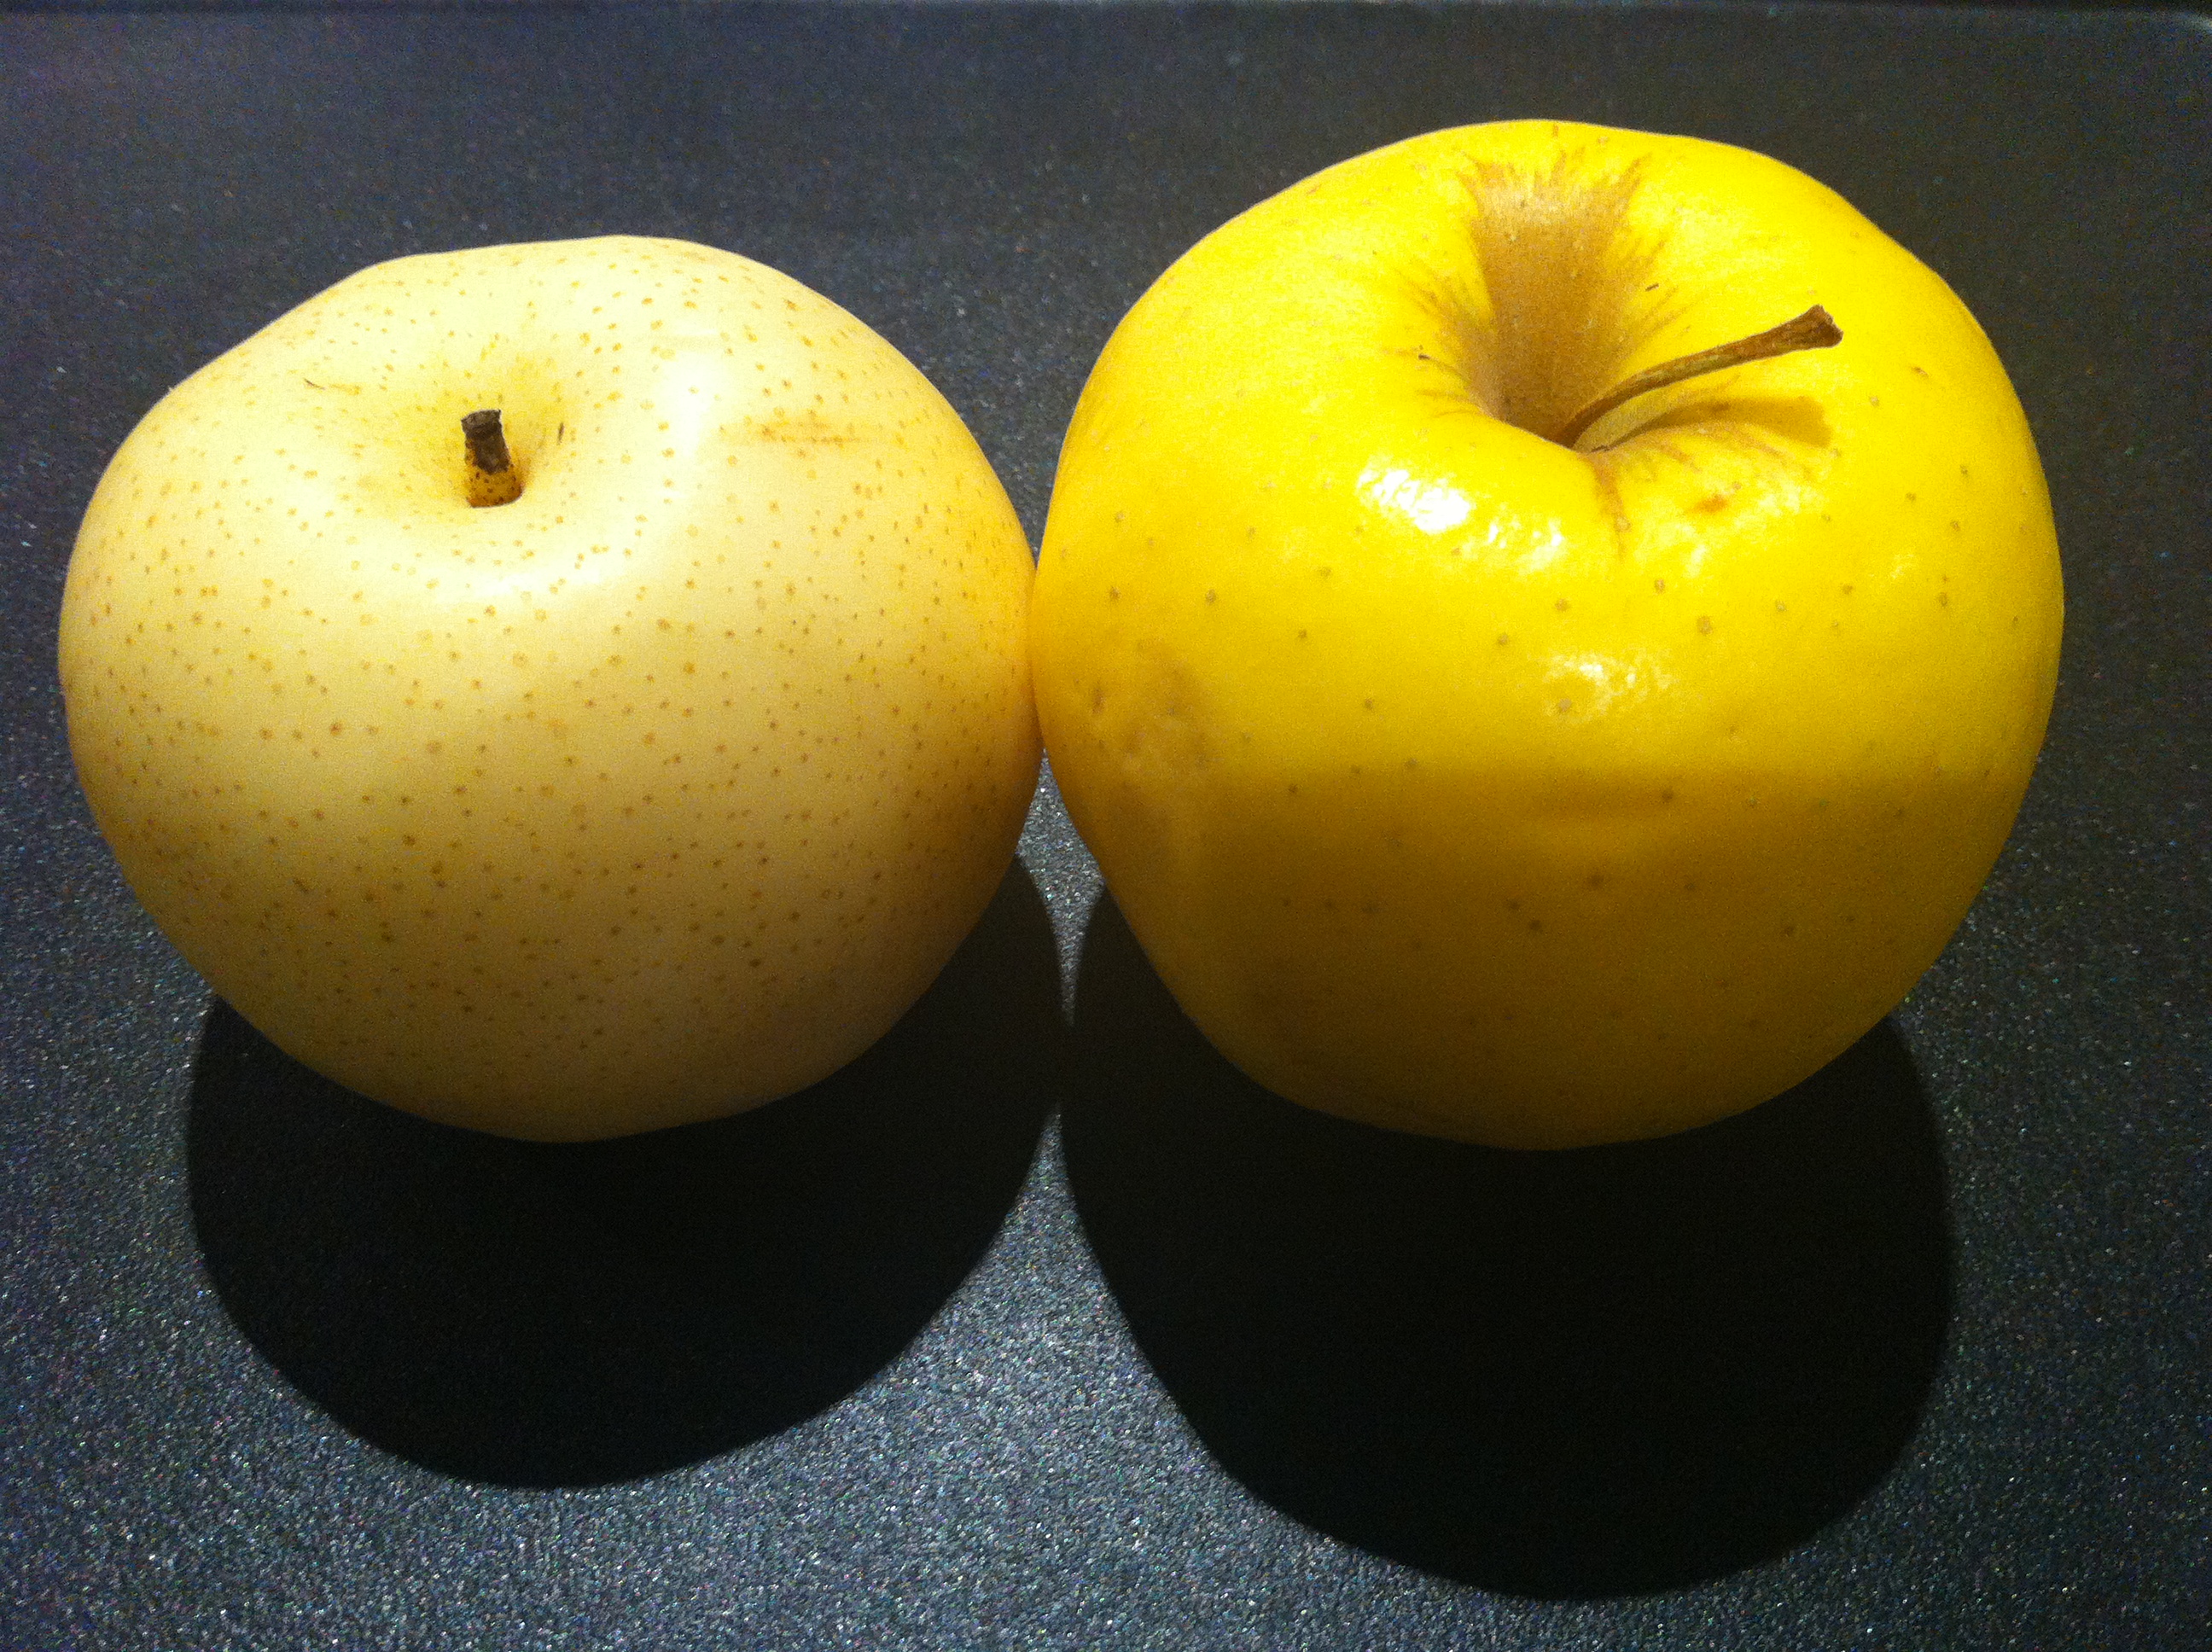 El que está a la izquierda es la pera asiática… El que está a la derecha es la manzana.